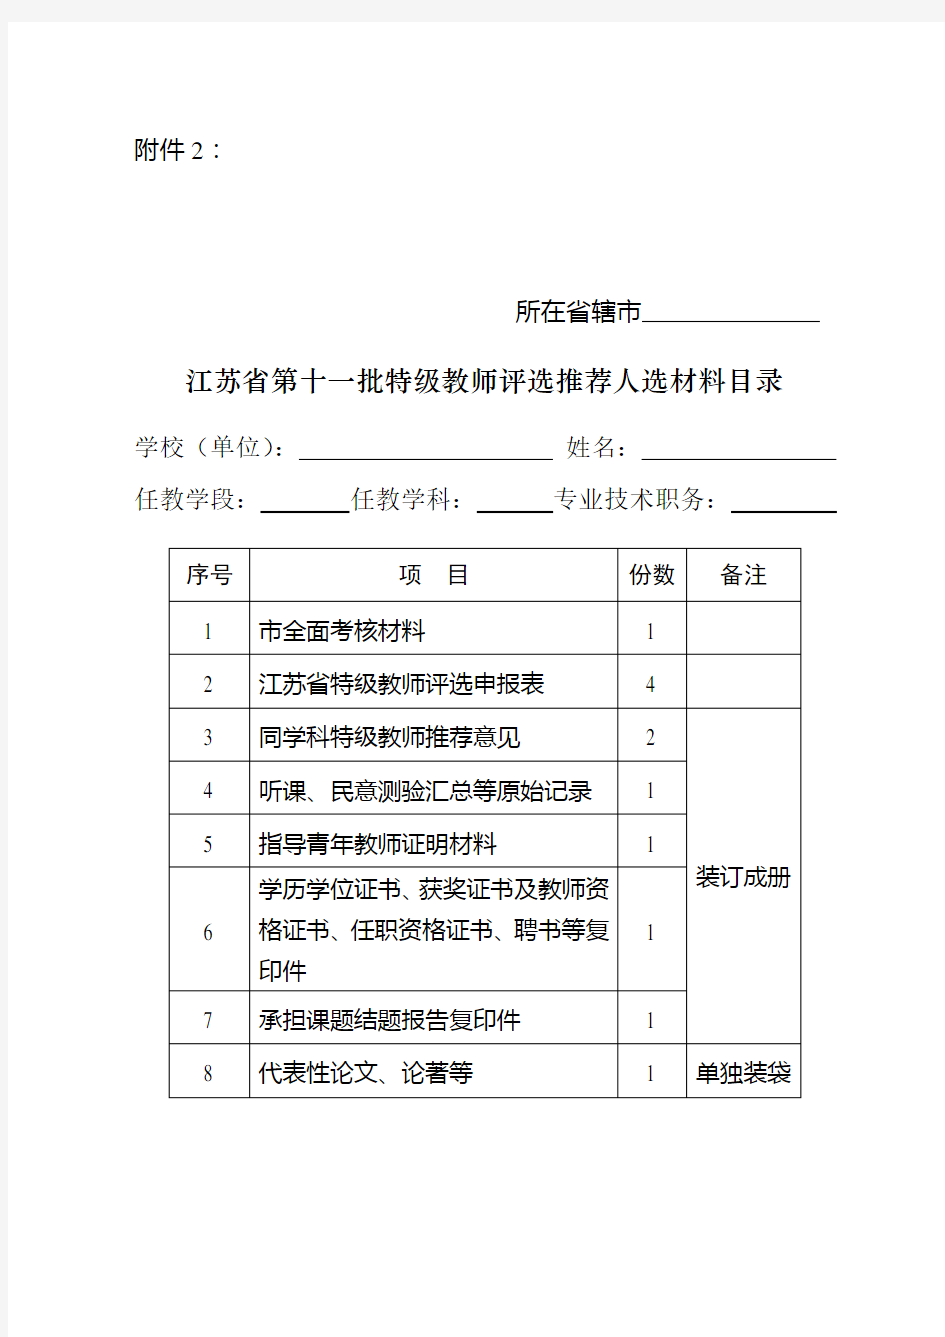 江苏省第十一批特级教师推荐人选名册